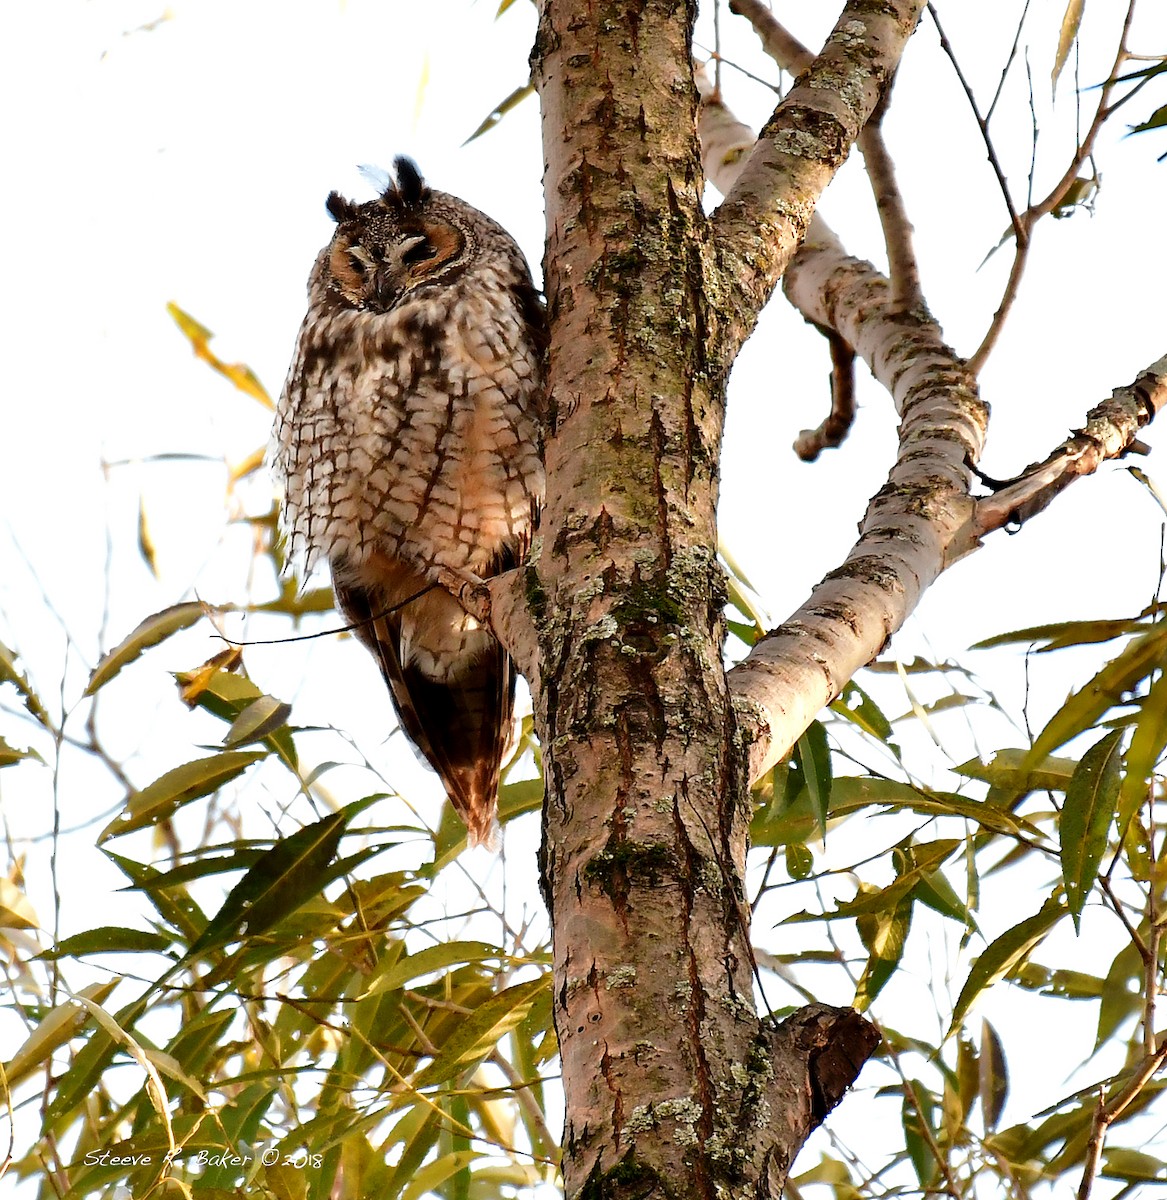 Long-eared Owl - Steeve R. Baker